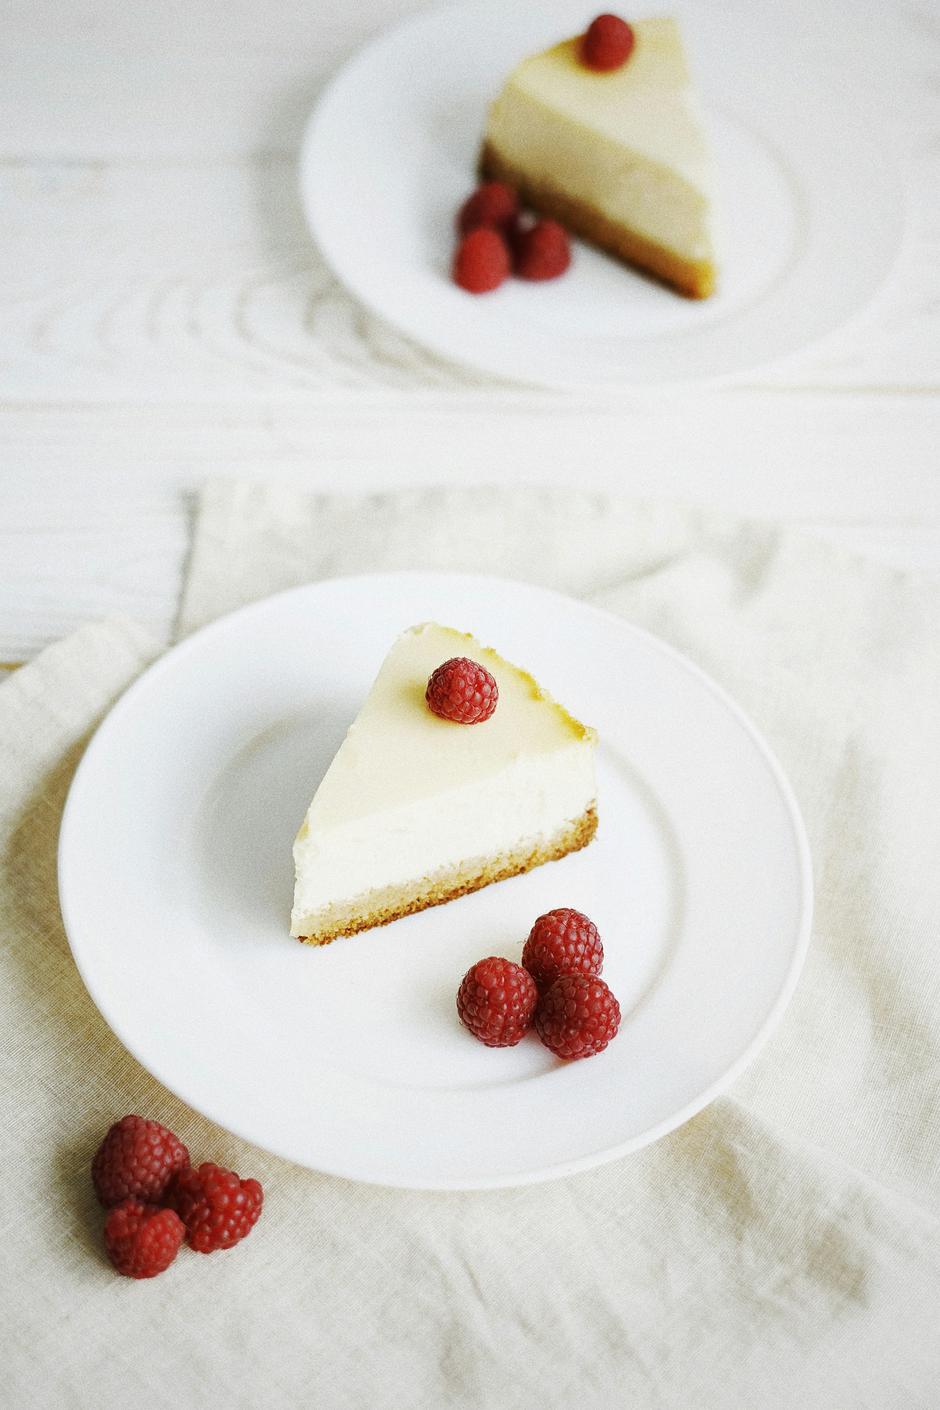 Cheesecake od bijele čokolade i malina | Author: Olena Bohovyk/Unsplash